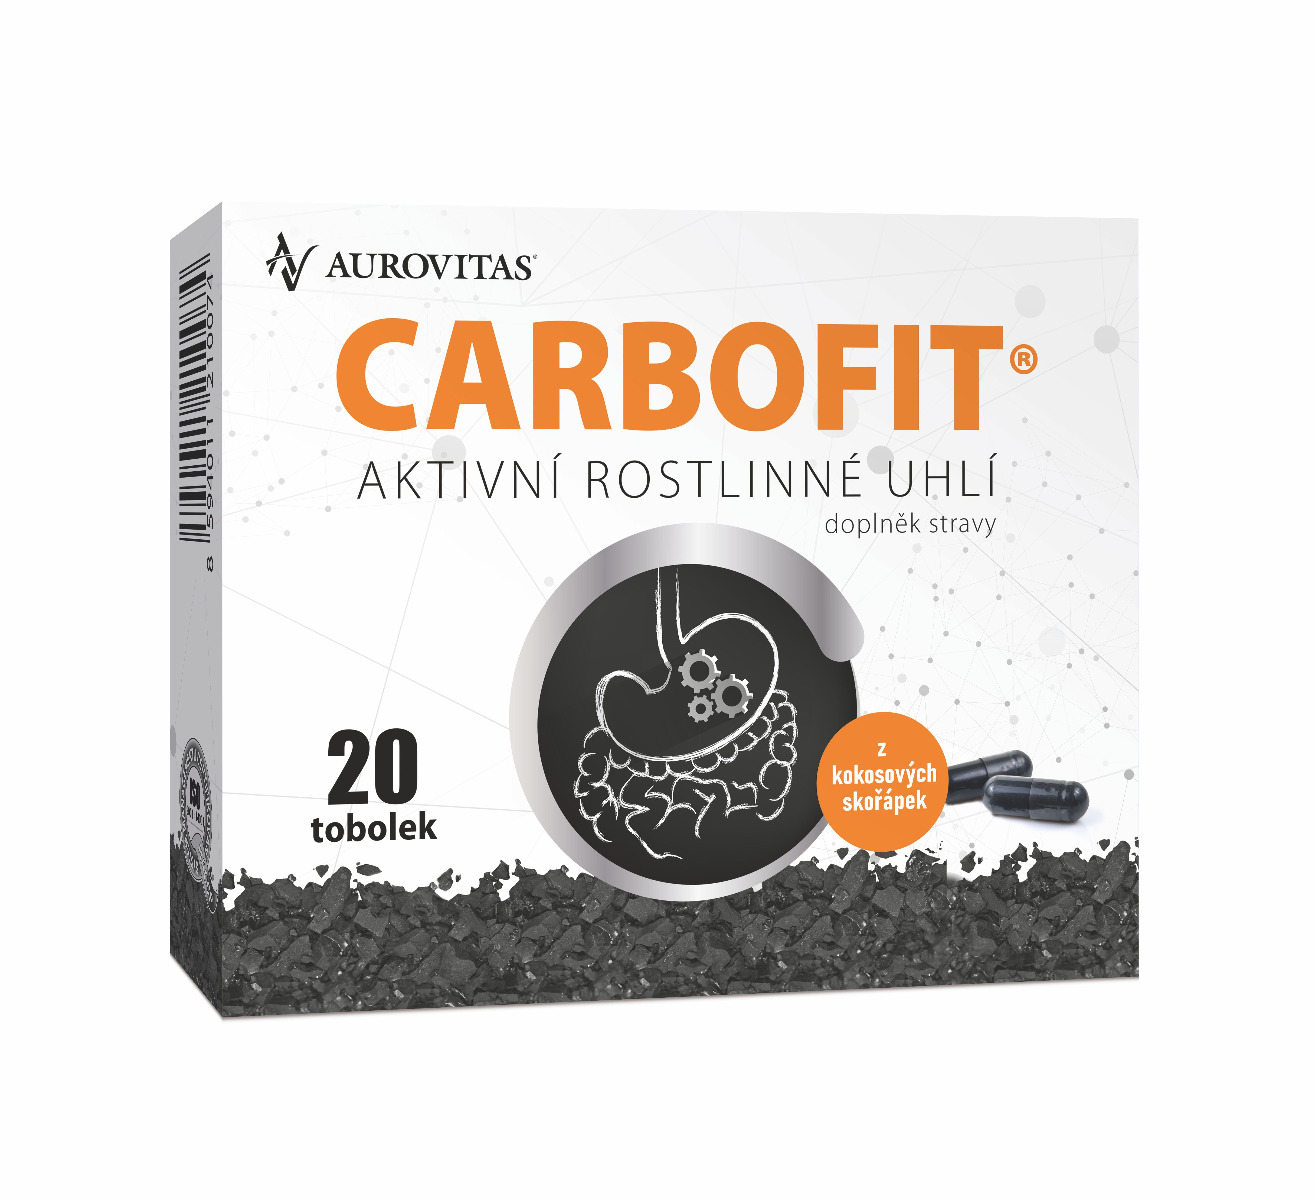 Carbofit 20 tobolek Carbofit